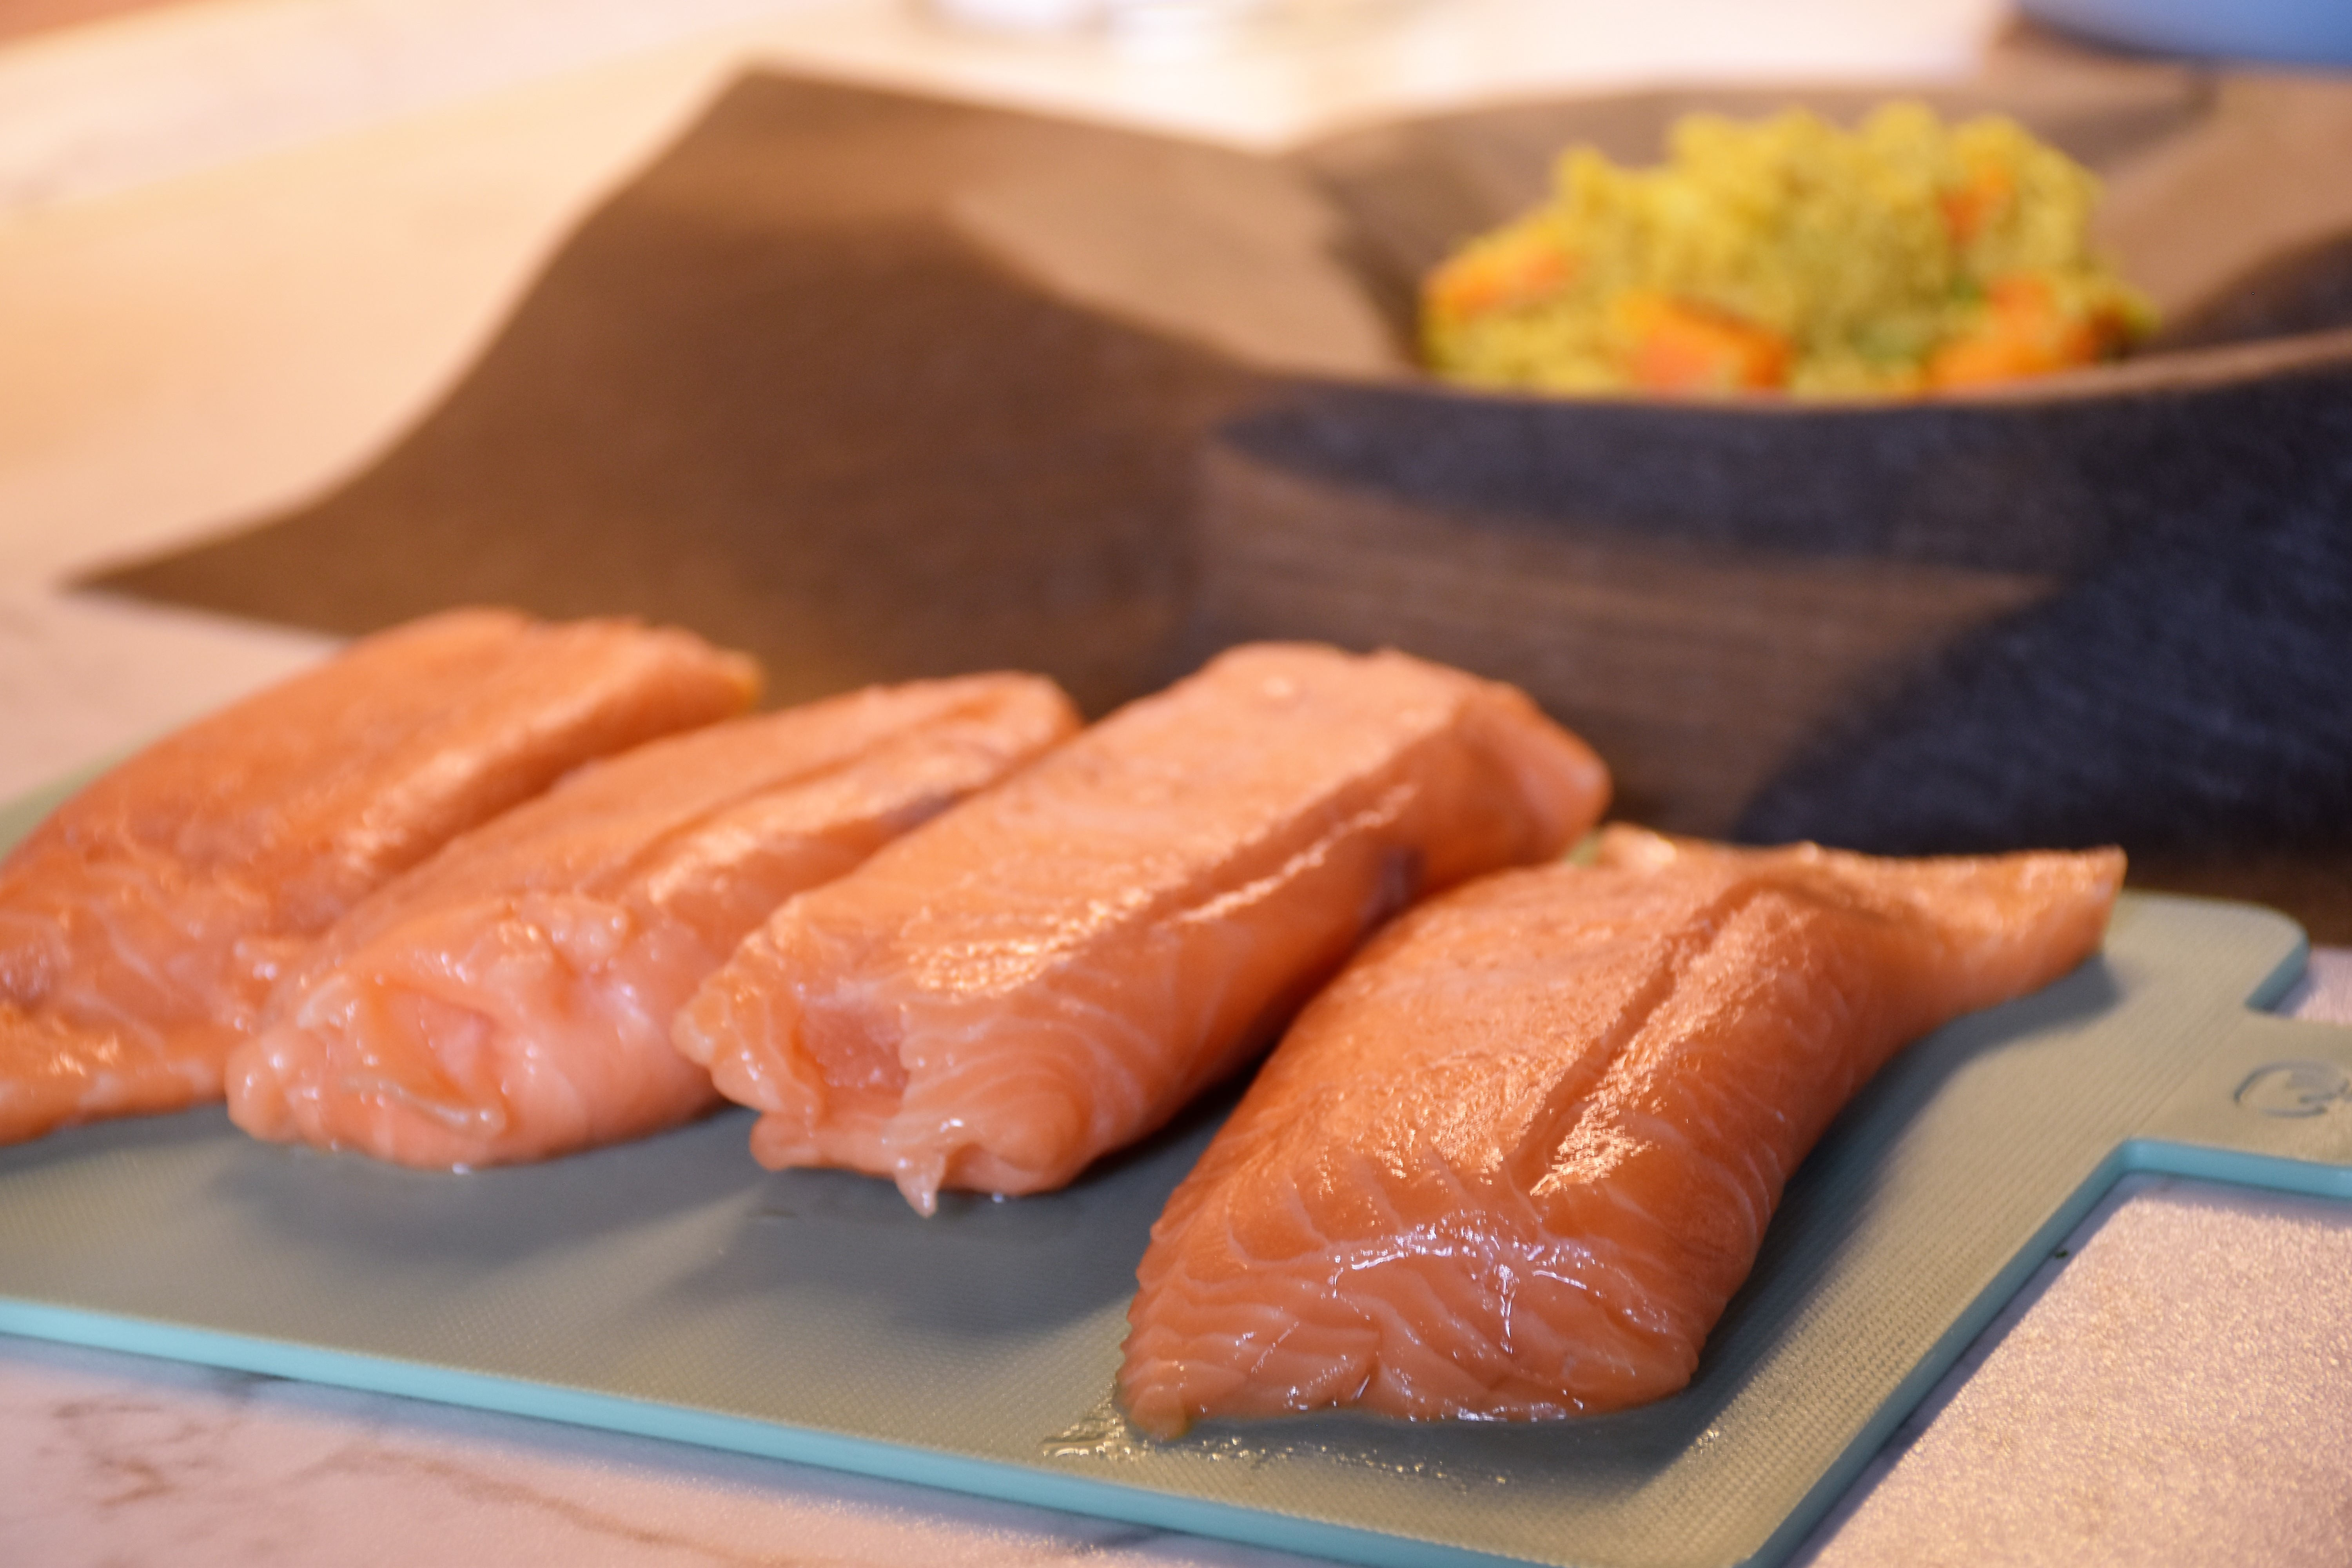 Blechrein salmon couscous packets